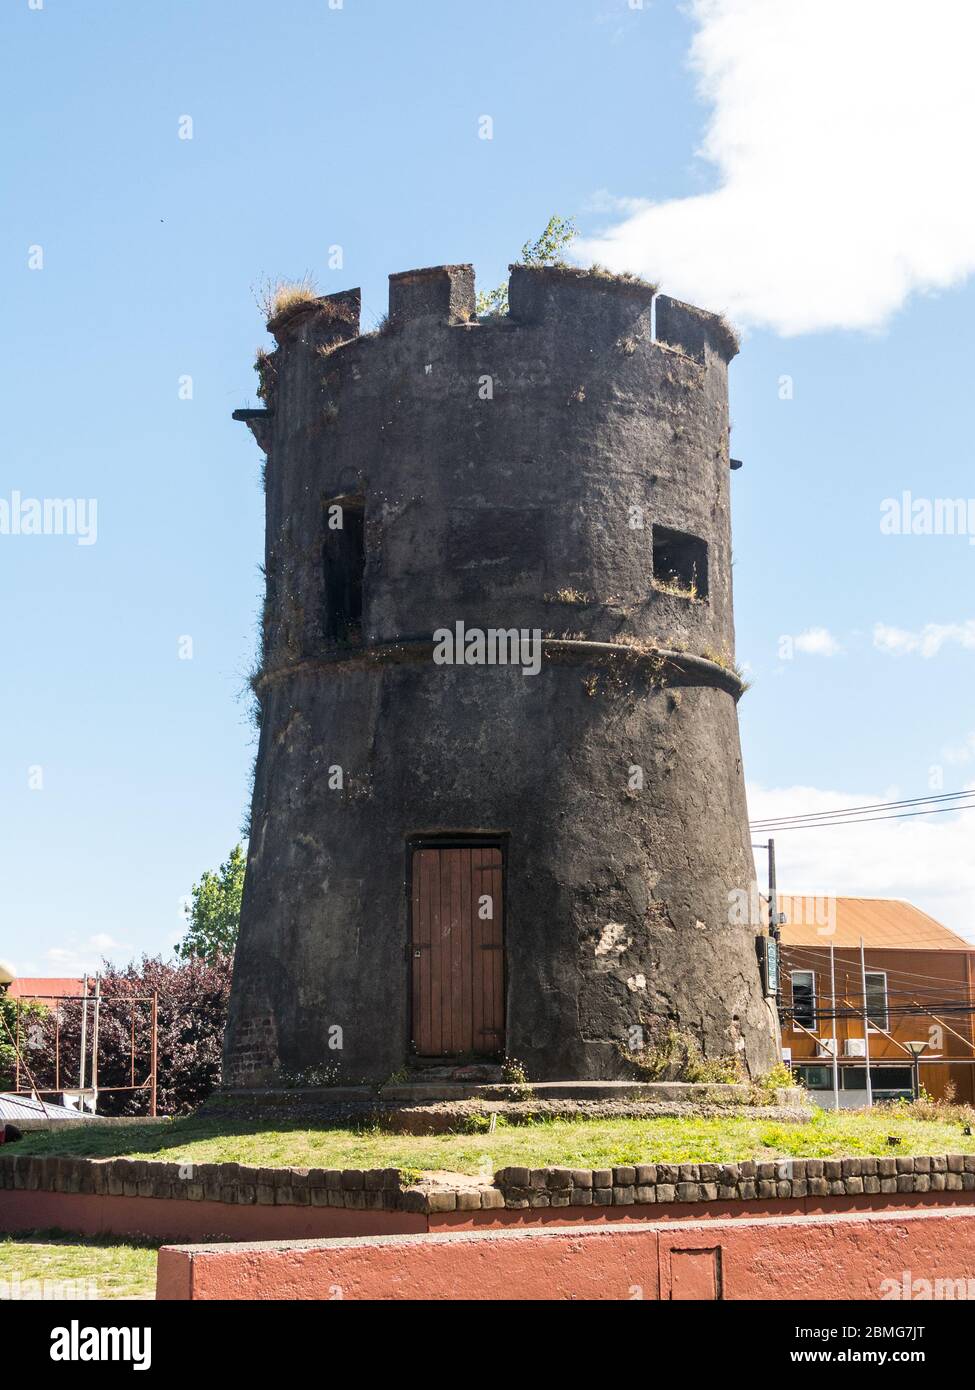 Old spanish tower. El Torreon Los Canelos o Torreon de Cantarranas in Valdivia, Los Rios Region, Chile South America. Dates from the 17th century Stock Photo